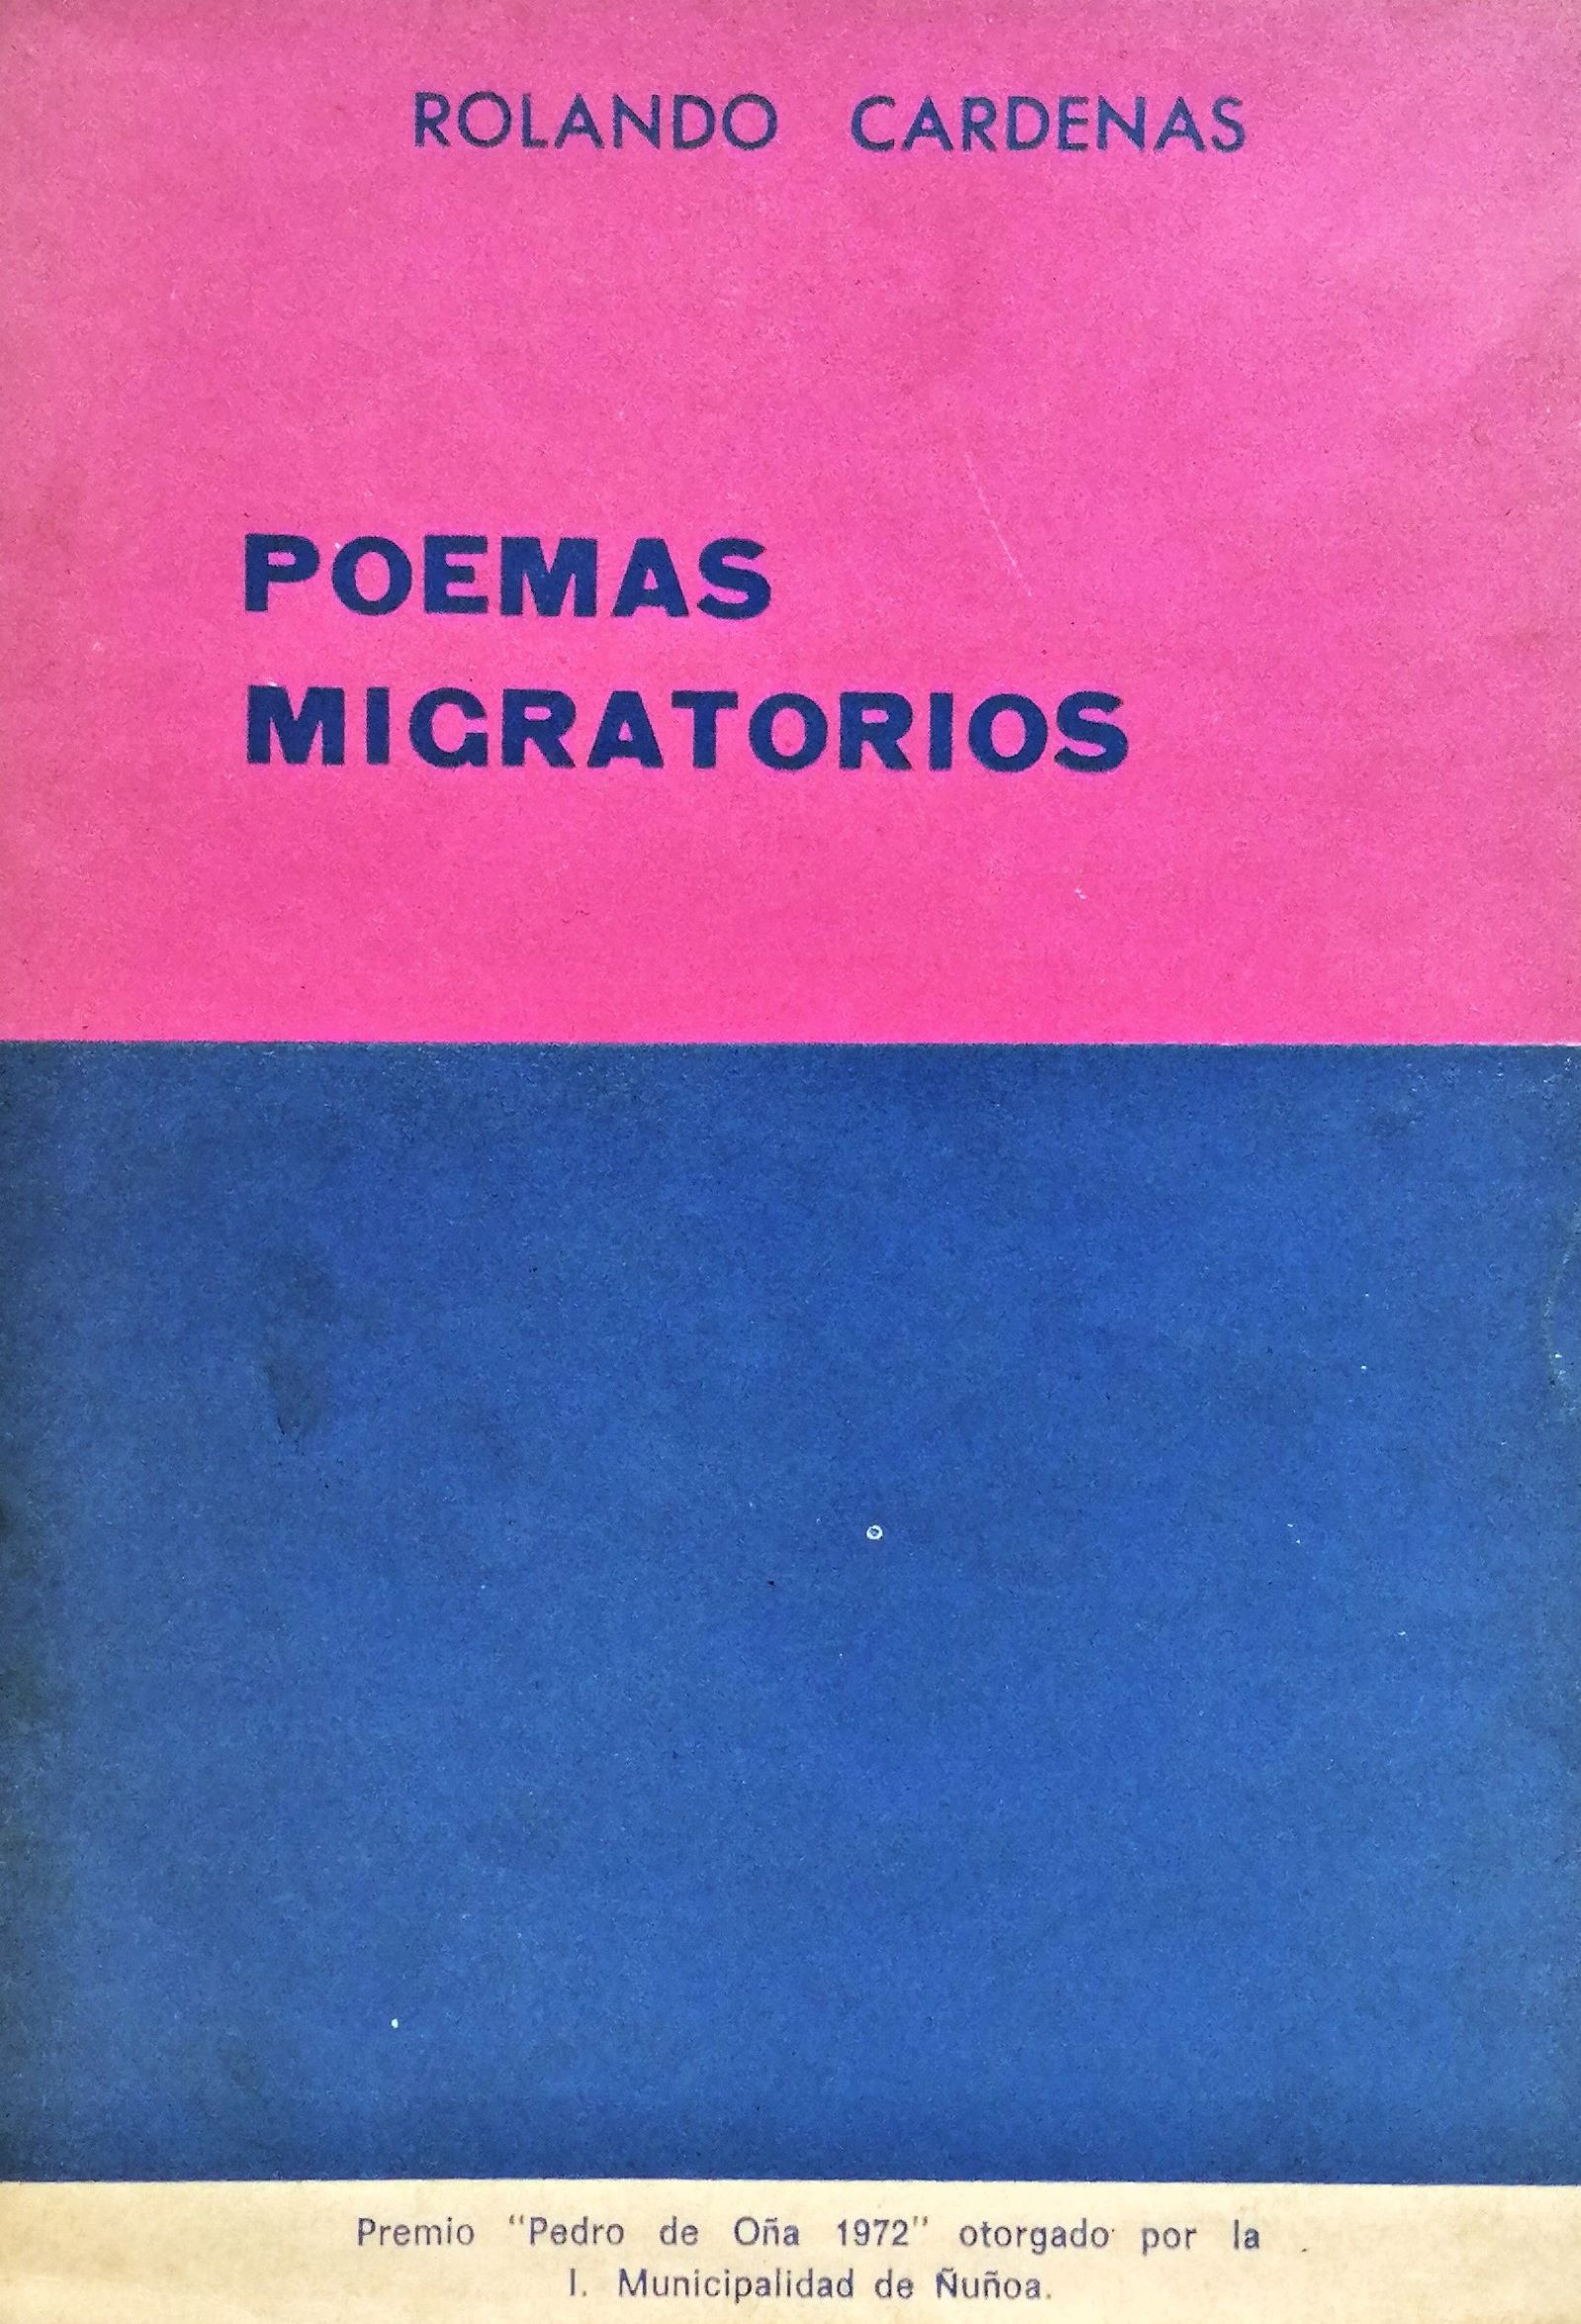 Rolando Cárdenas - Poemas Migratorios